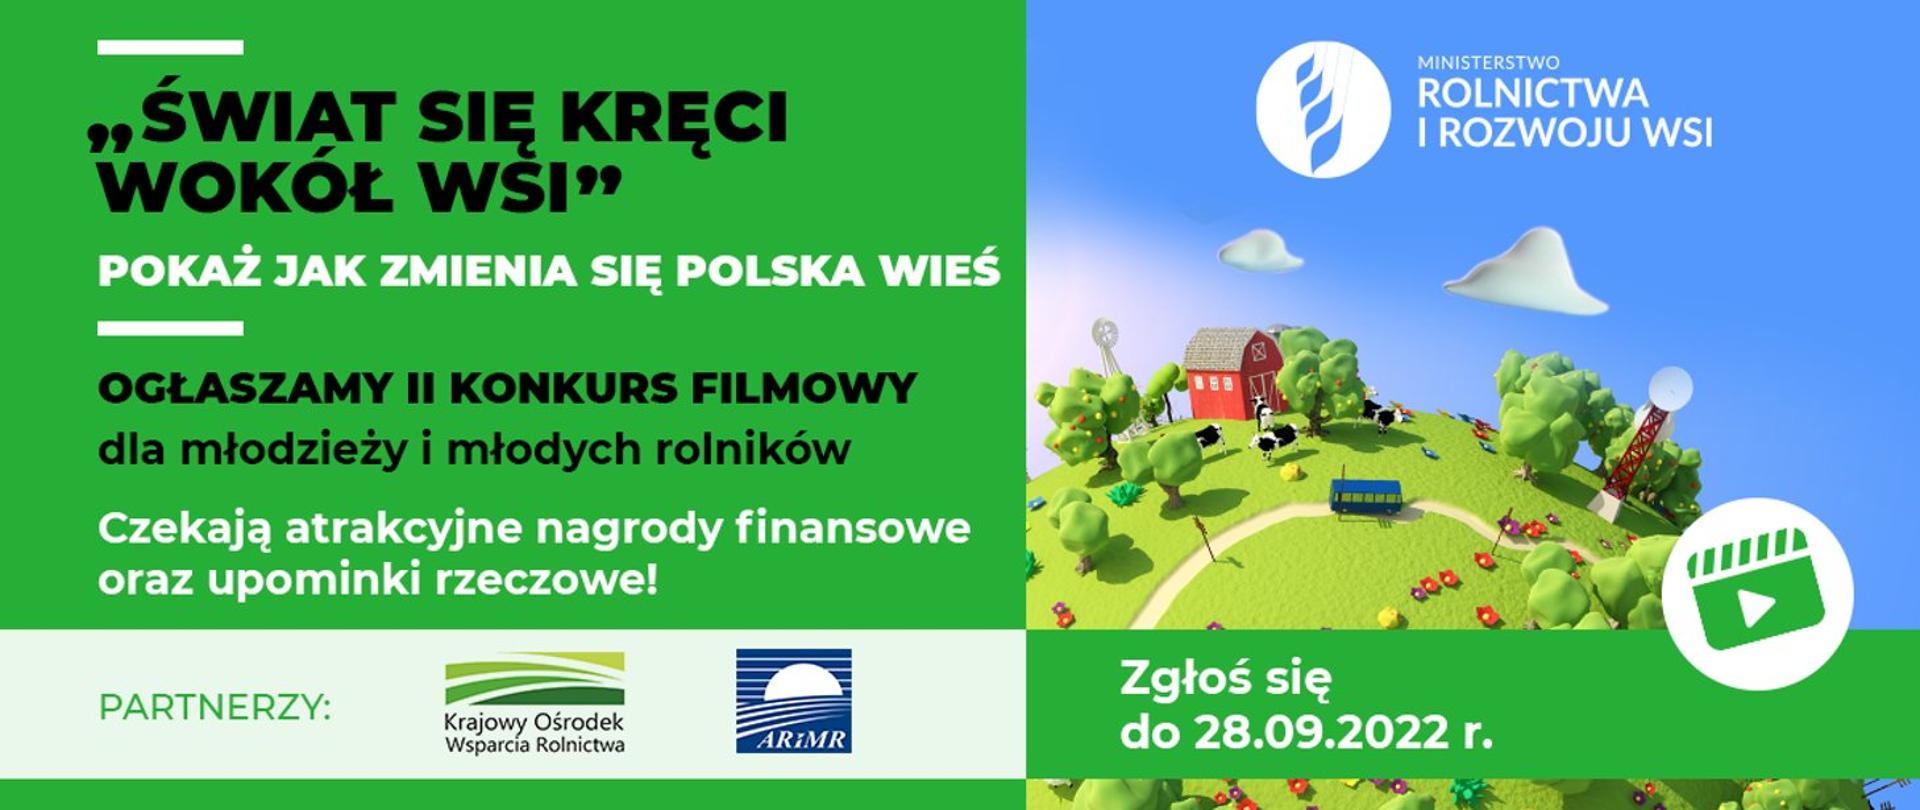 Banner reklamujący konkurs ministerstwa rolnictwa i rozwoju wsi pod tytułem "Świat się kręci wokół wsi".